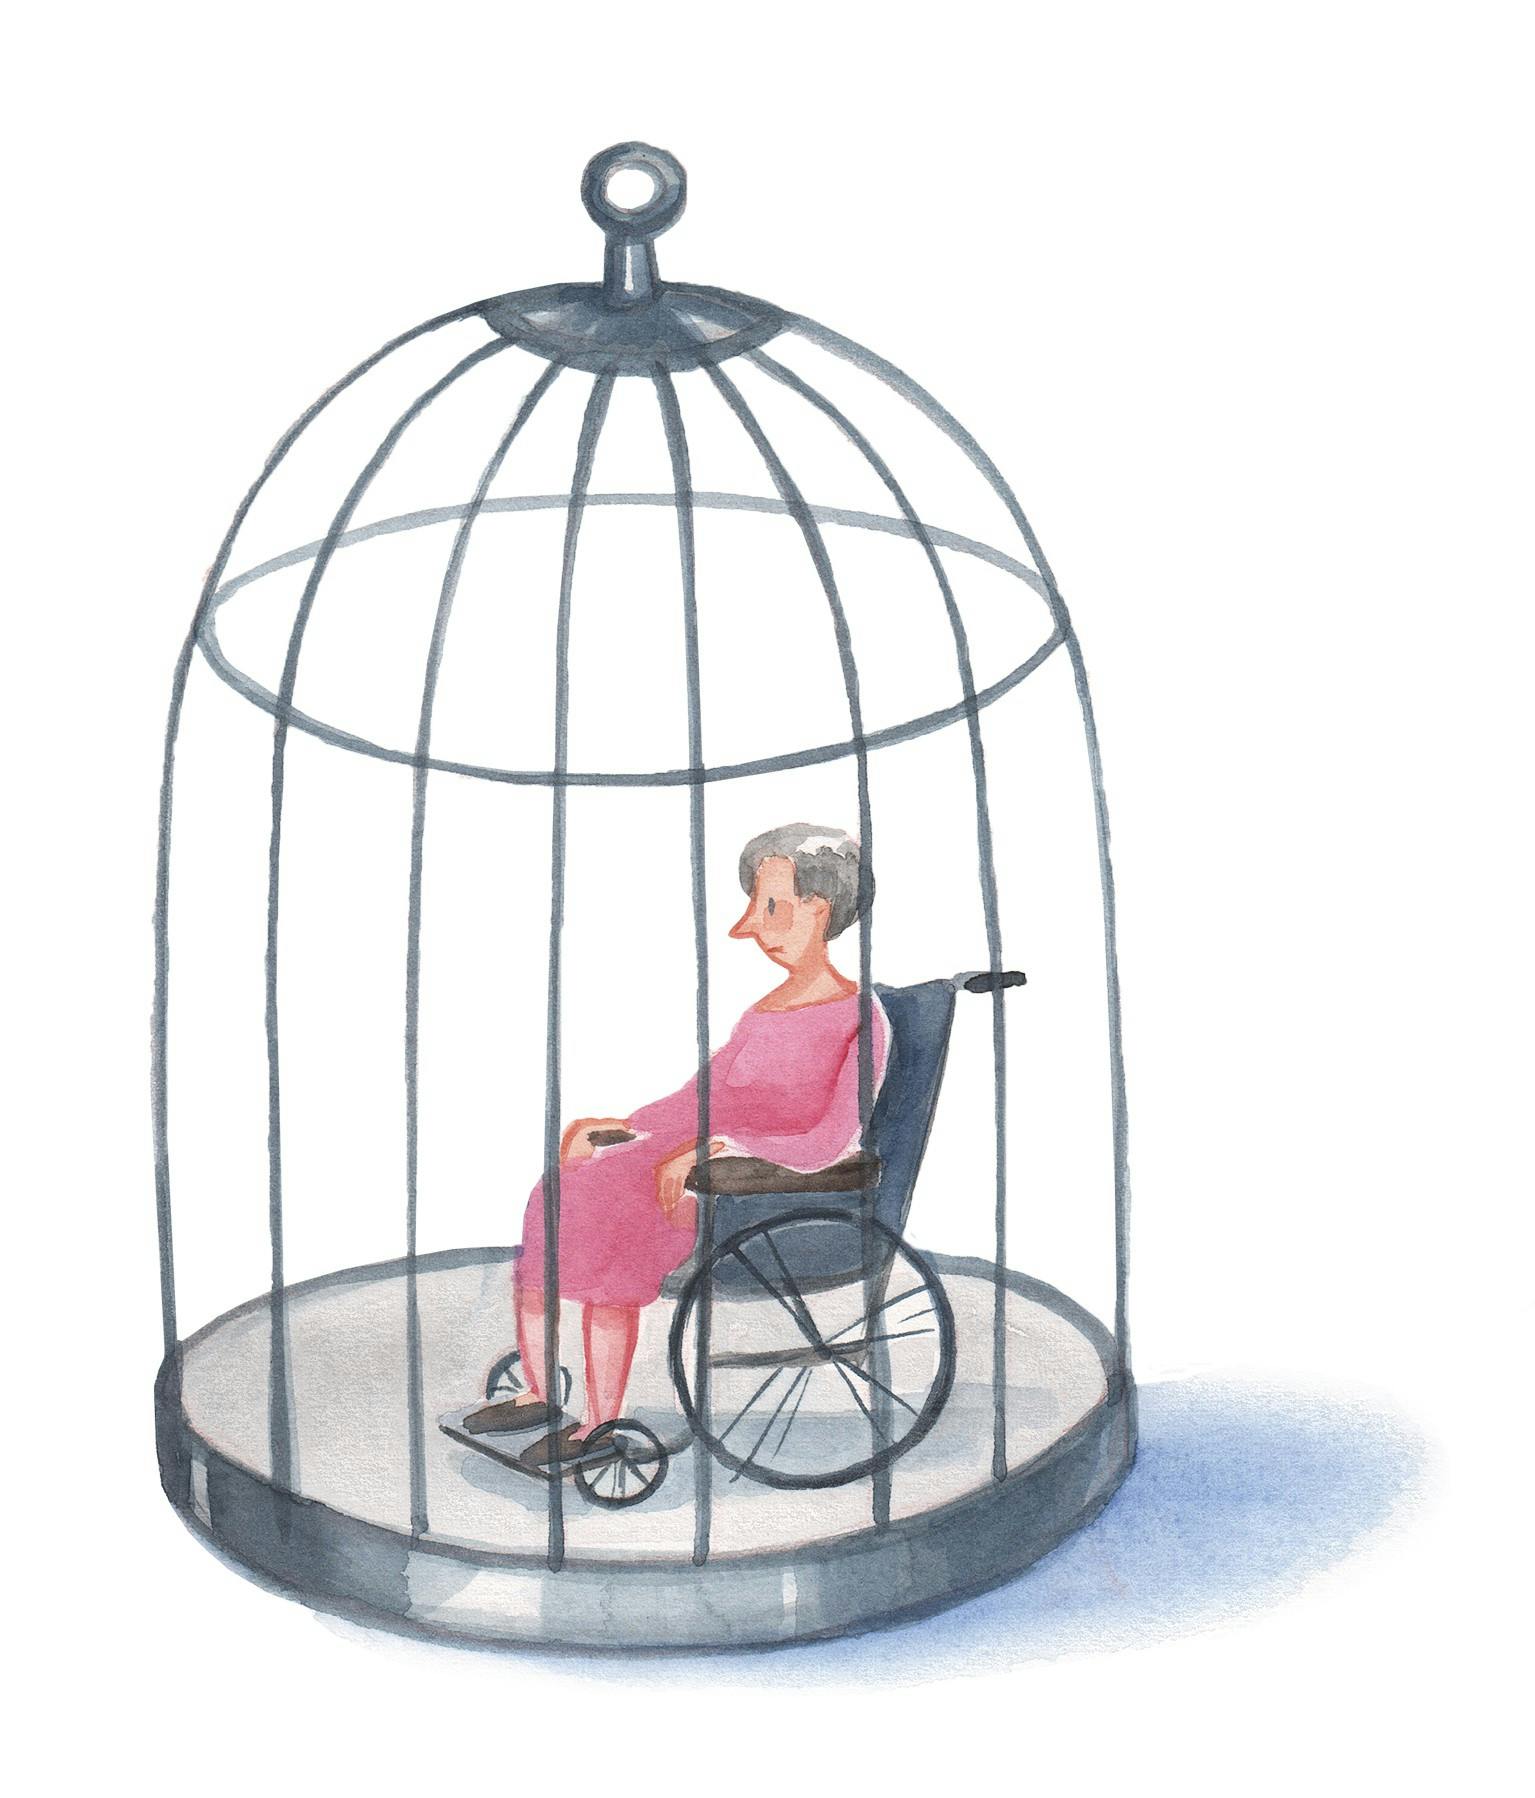 Ældre kvinde fanget i et bur